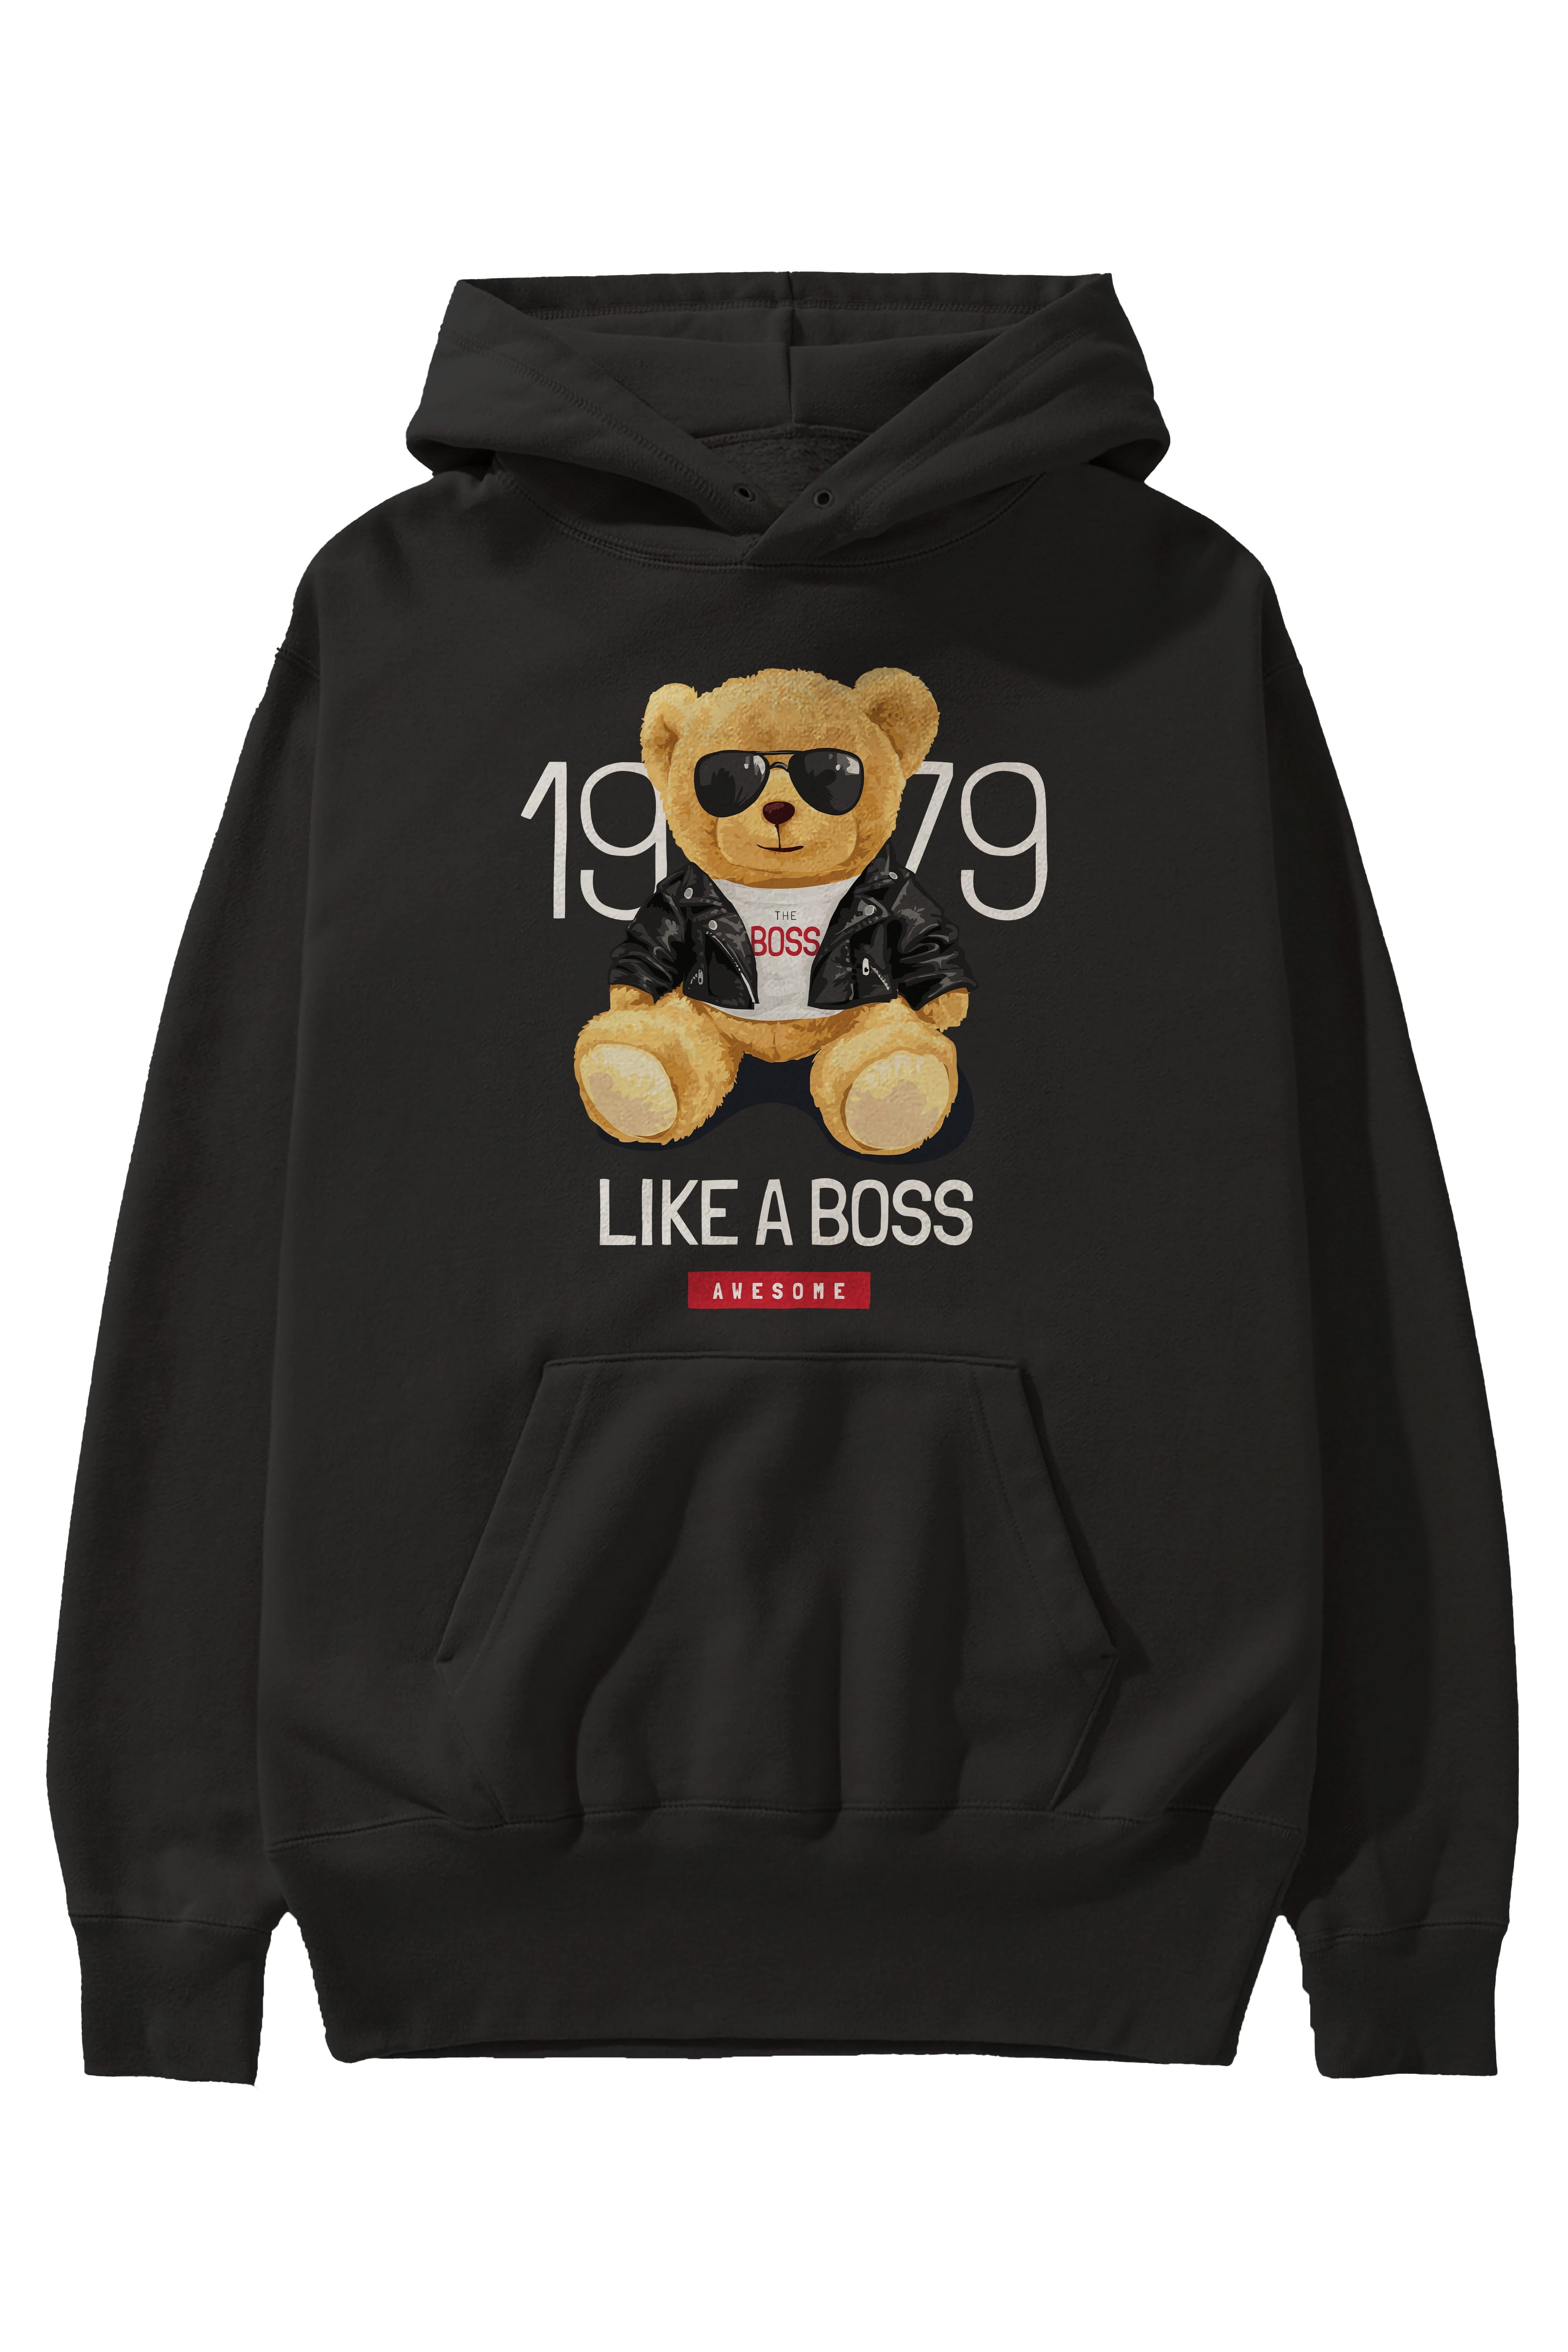 Teddy Bear Like A Boss Ön Baskılı Hoodie Oversize Kapüşonlu Sweatshirt Erkek Kadın Unisex